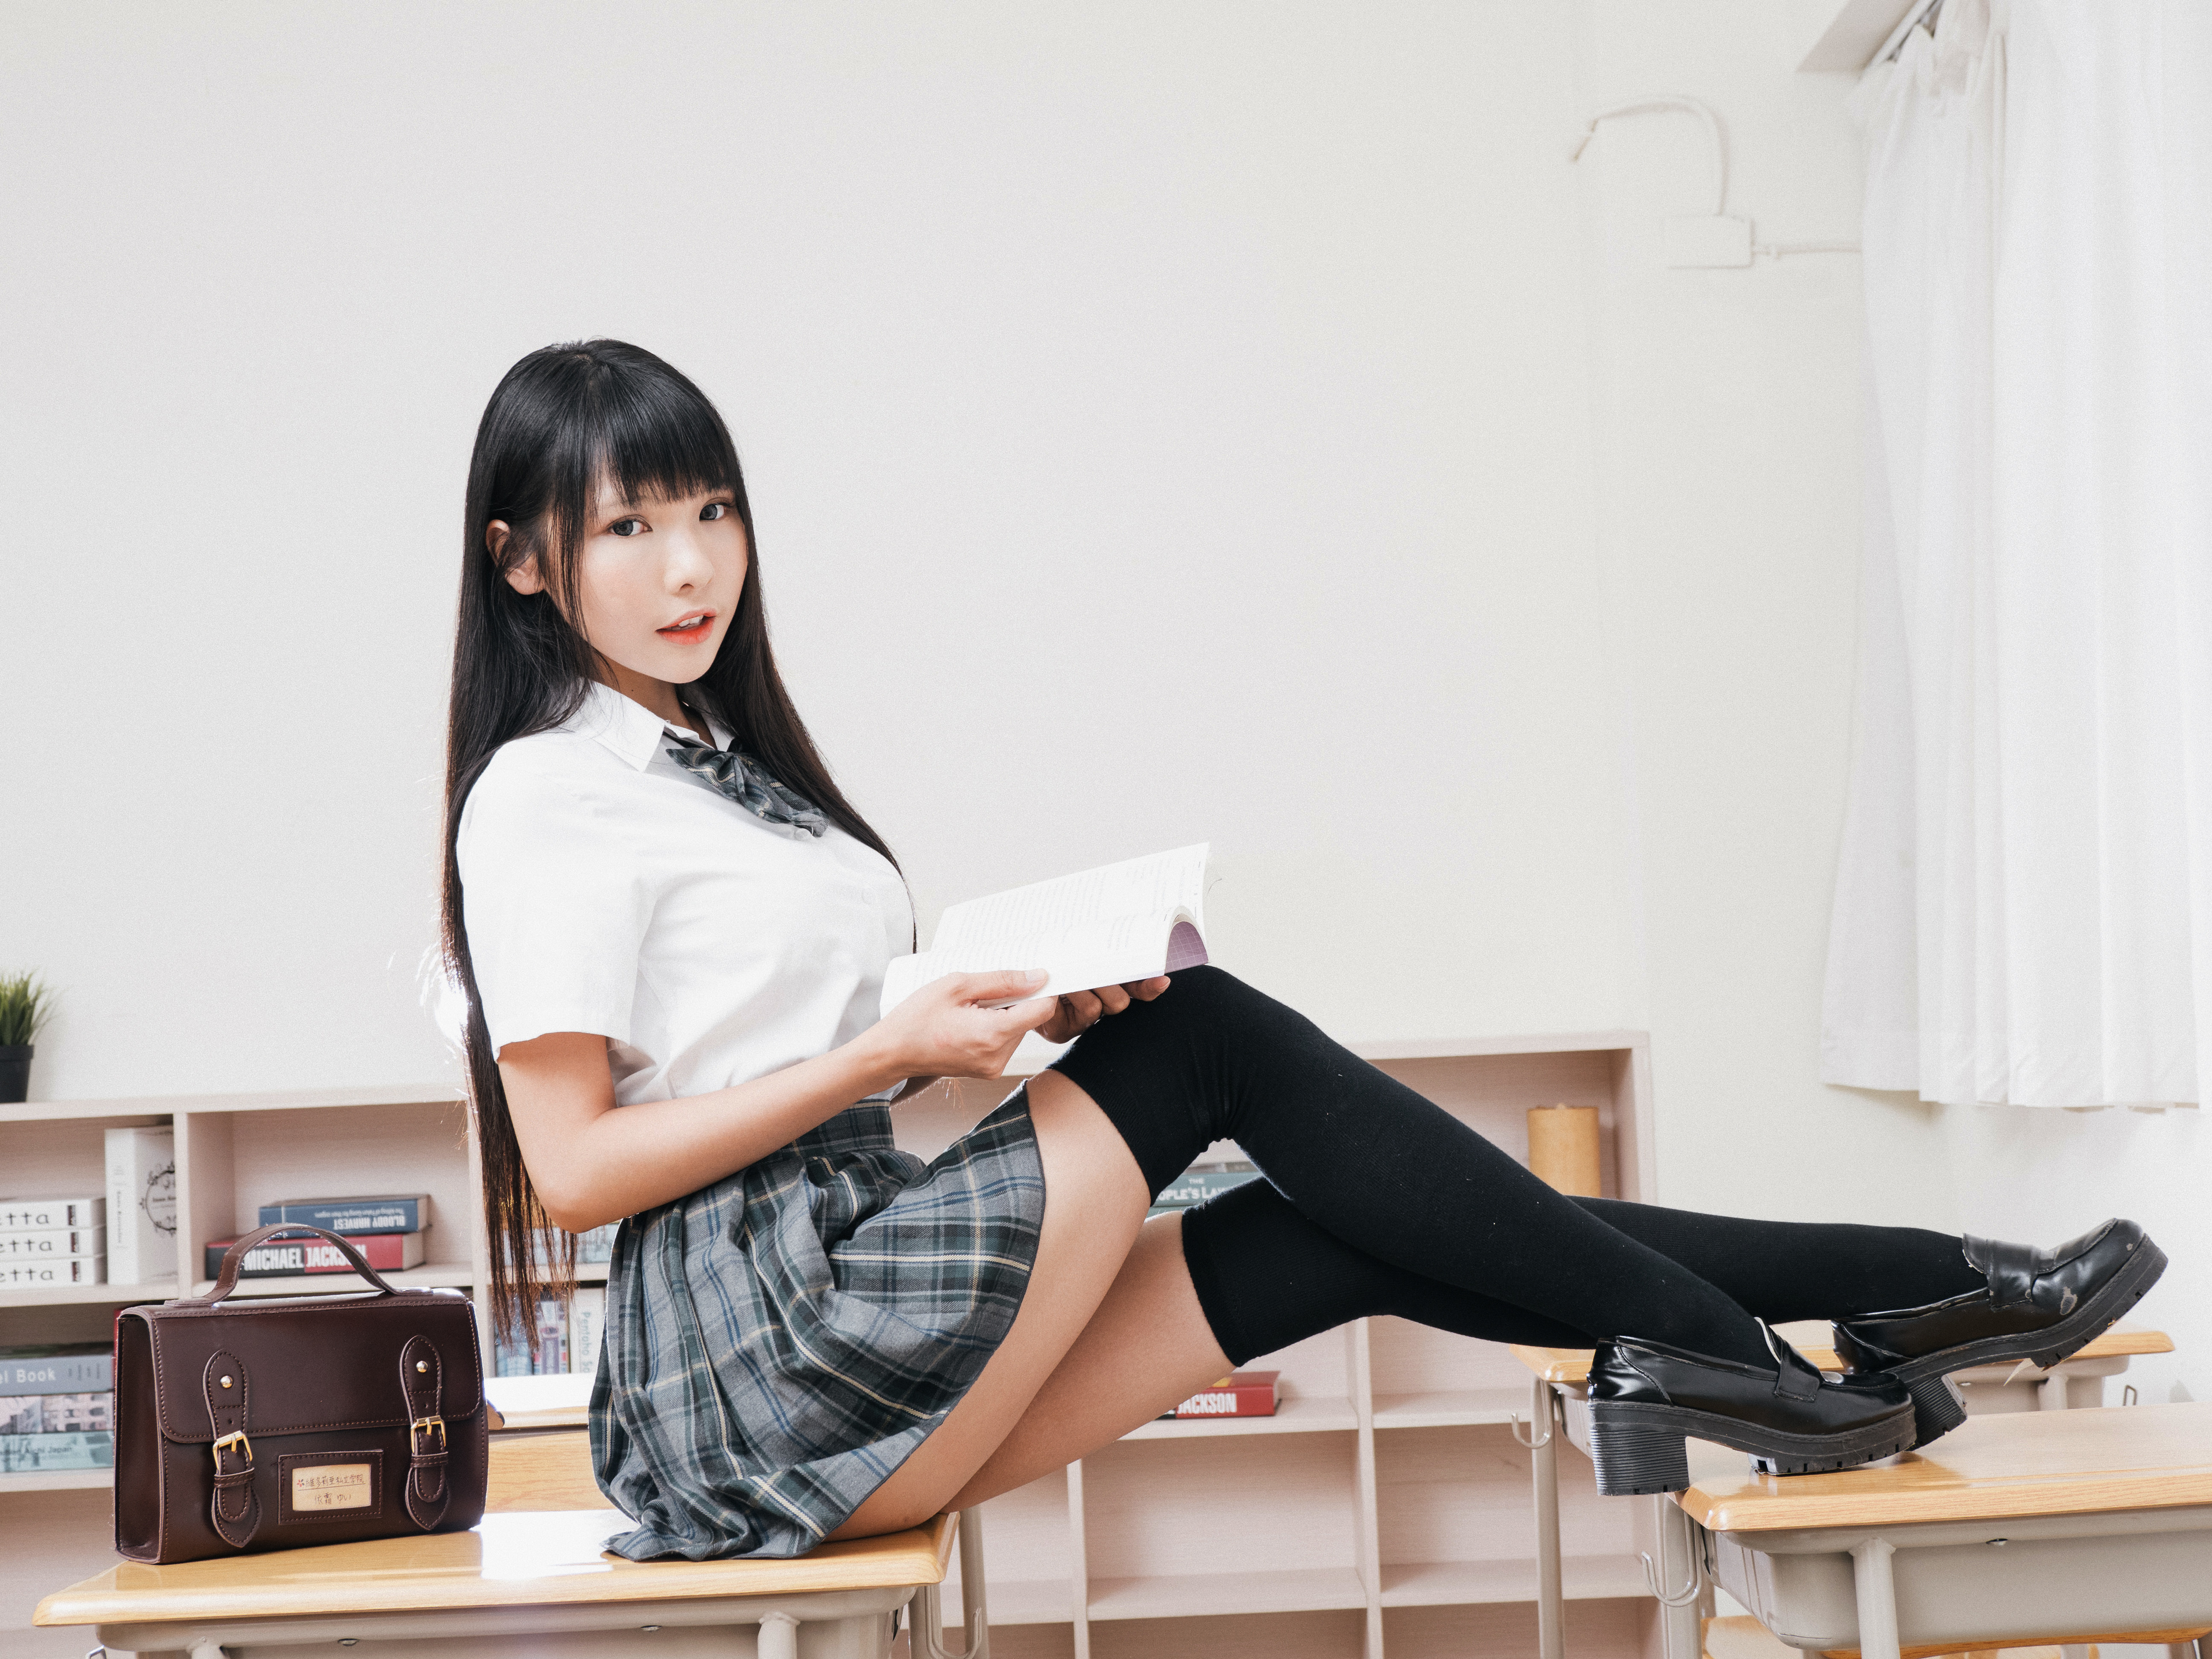 Wallpapers young woman knee highs schoolgirls on the desktop